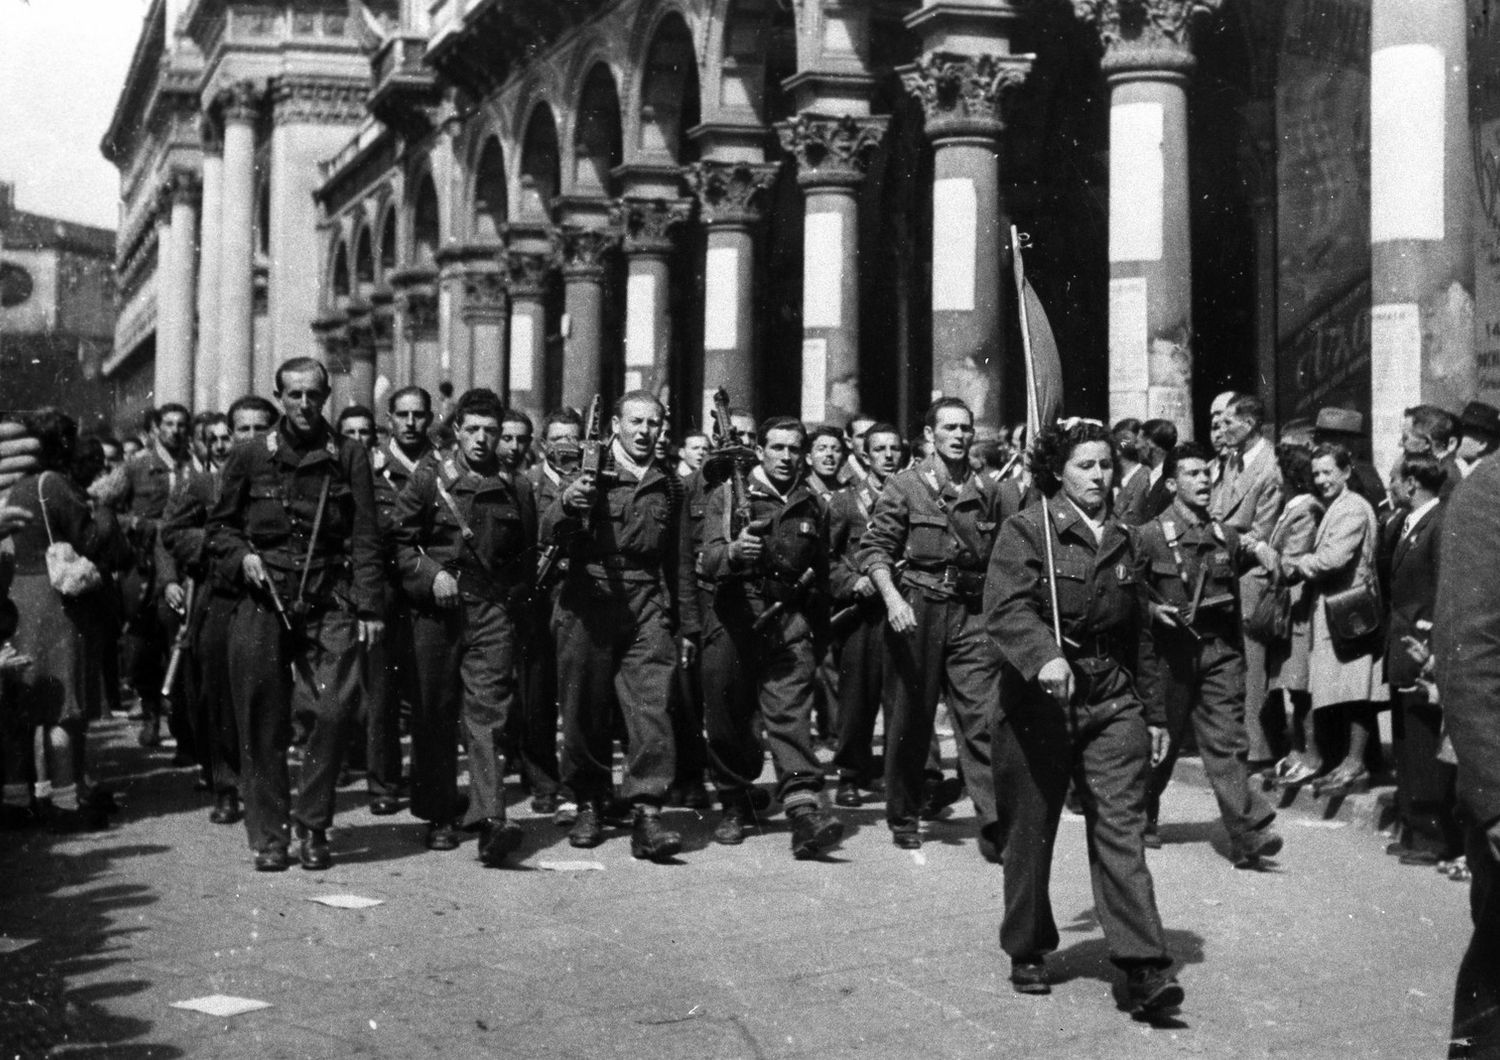 L'ingresso dei partigiani a Milano il 25 aprile del 1945